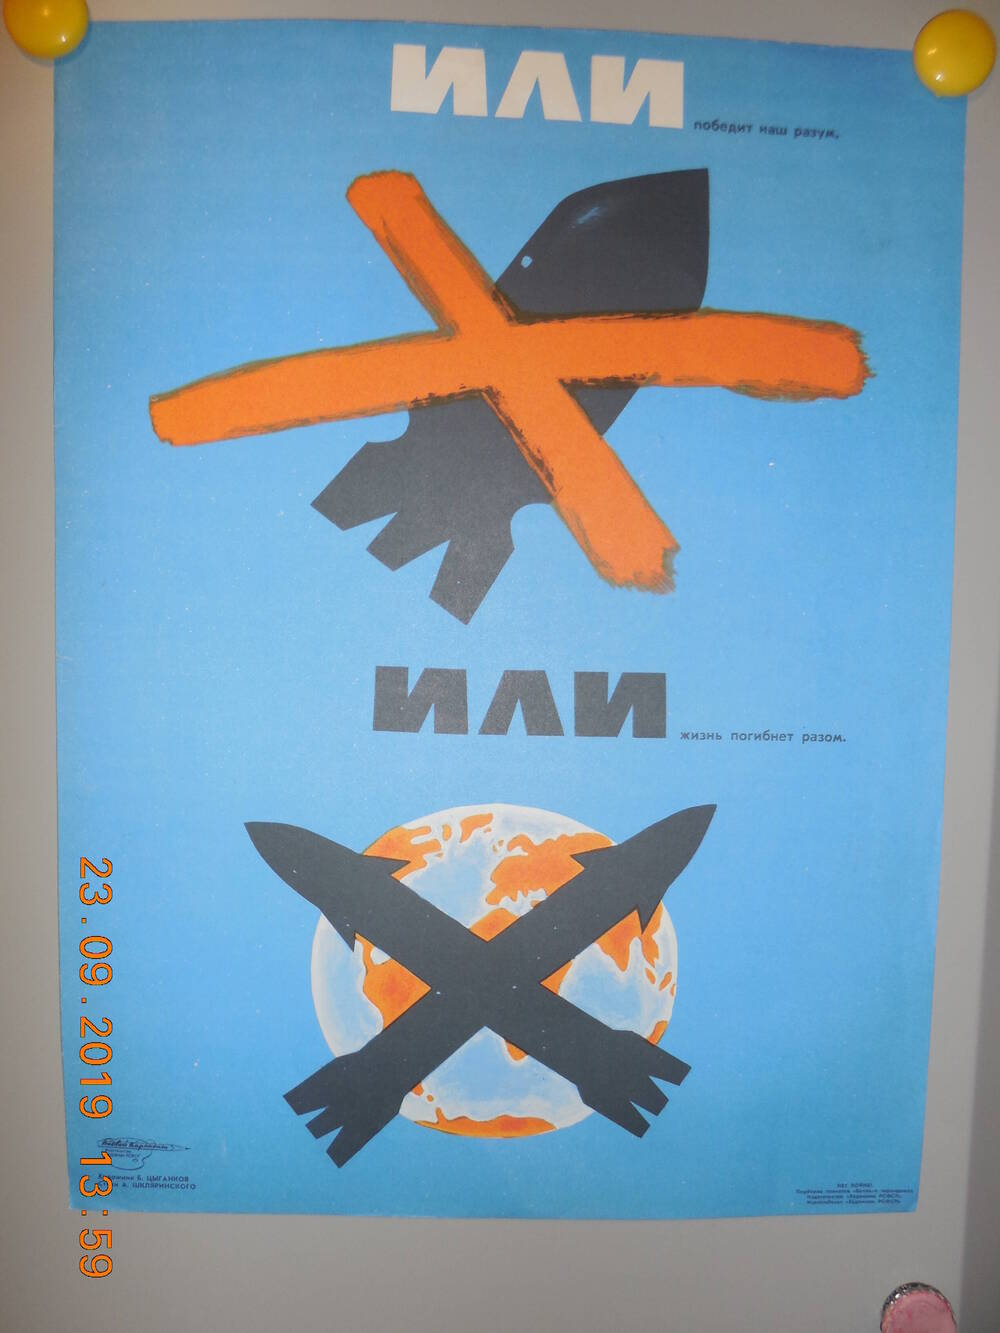 Плакат из подборки сатирических плакатов творческого объединения Боевой карандаш НЕТ ВОЙНЕ
Или - или